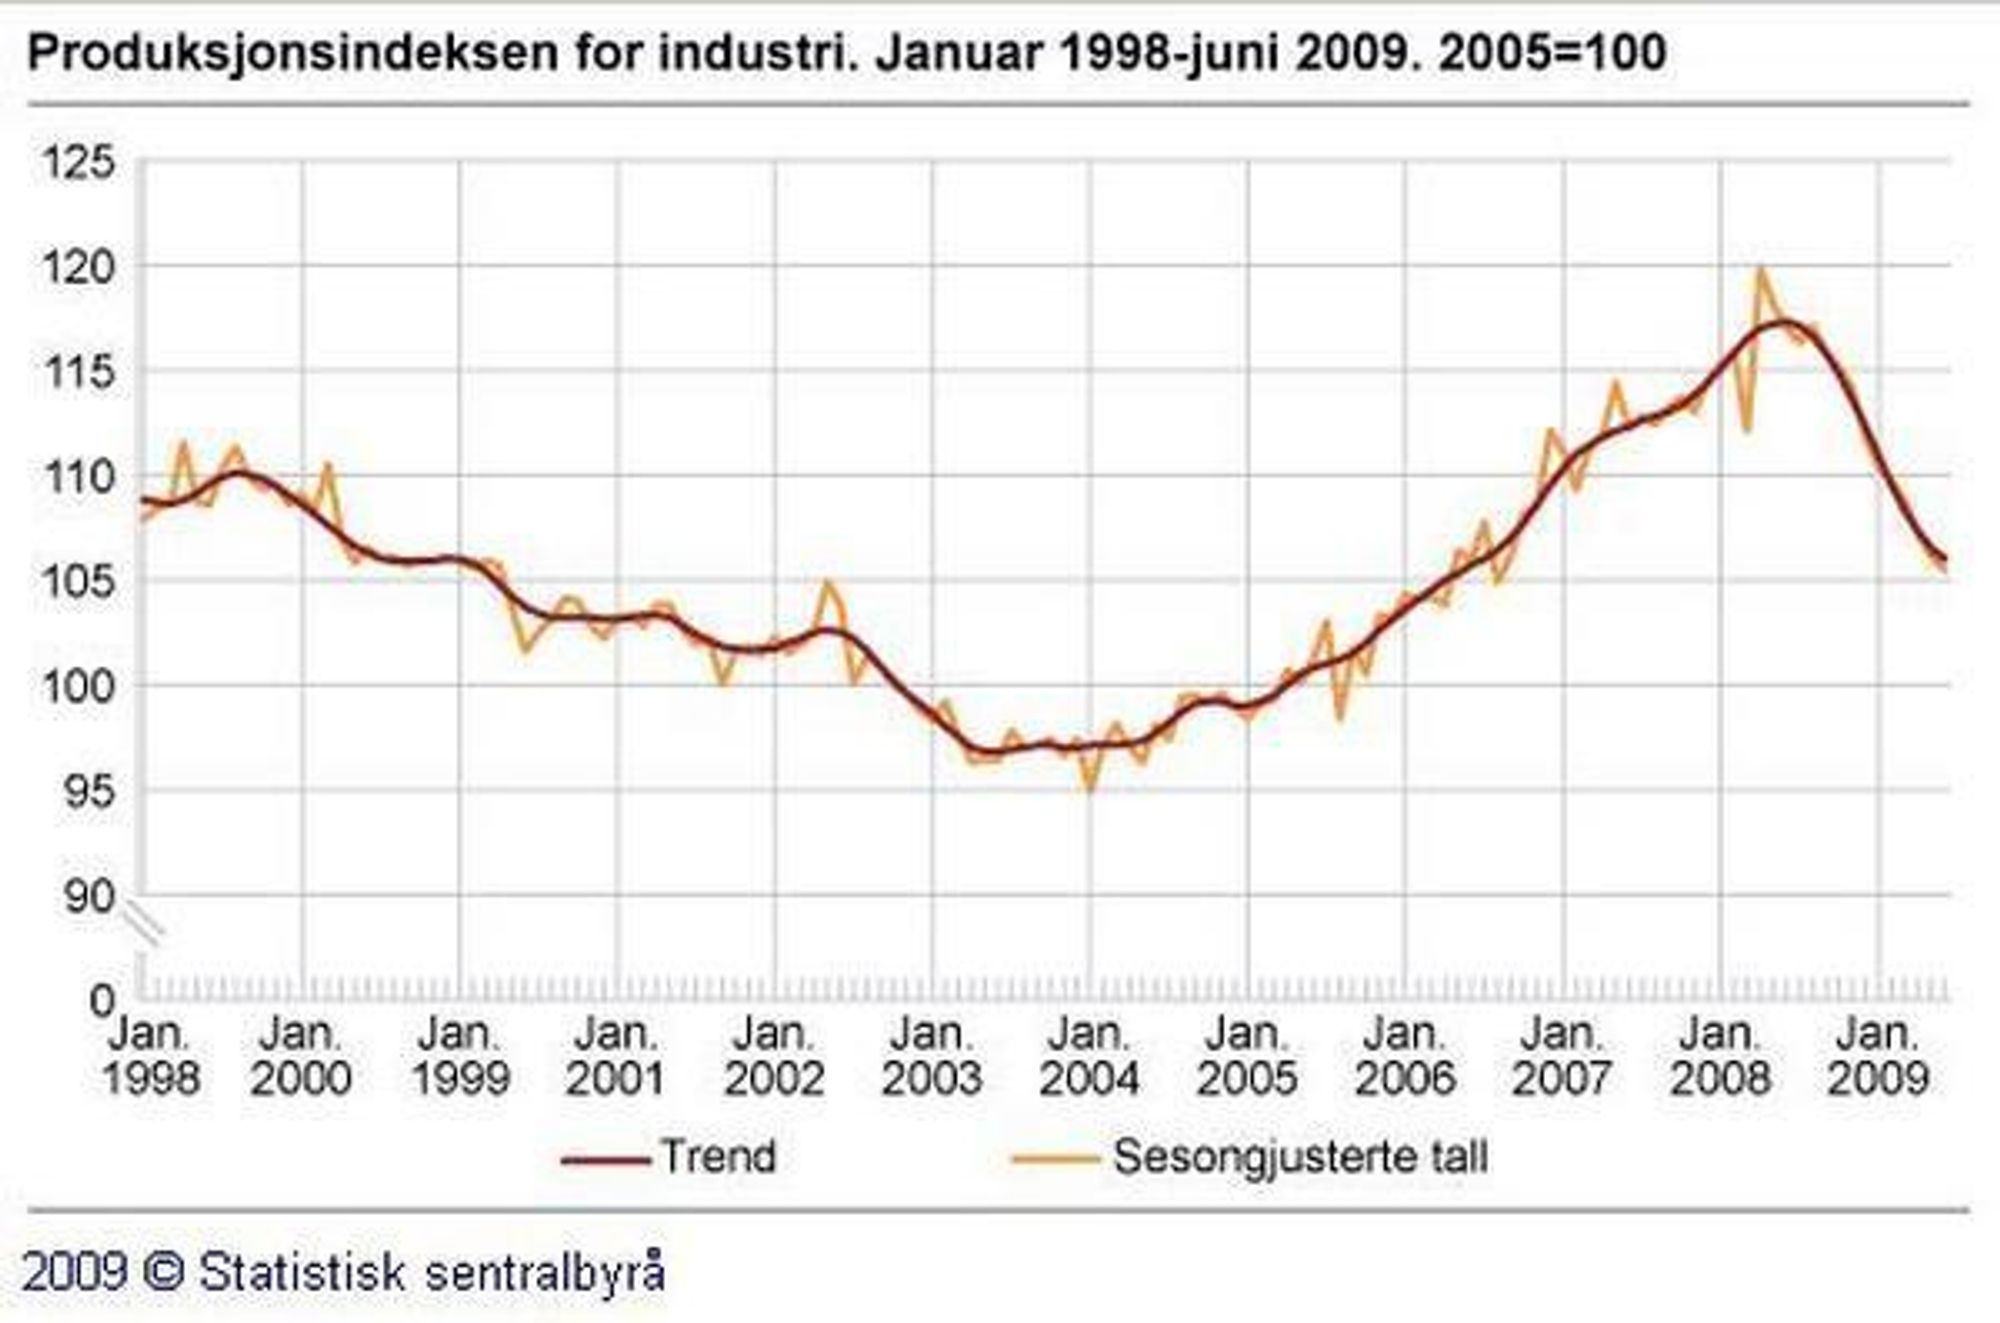 FALLER: Fortsatt går produksjonen ned i de aller fleste bransjer innen norsk industri. På ett år har produksjonen falt med 10 prosent.